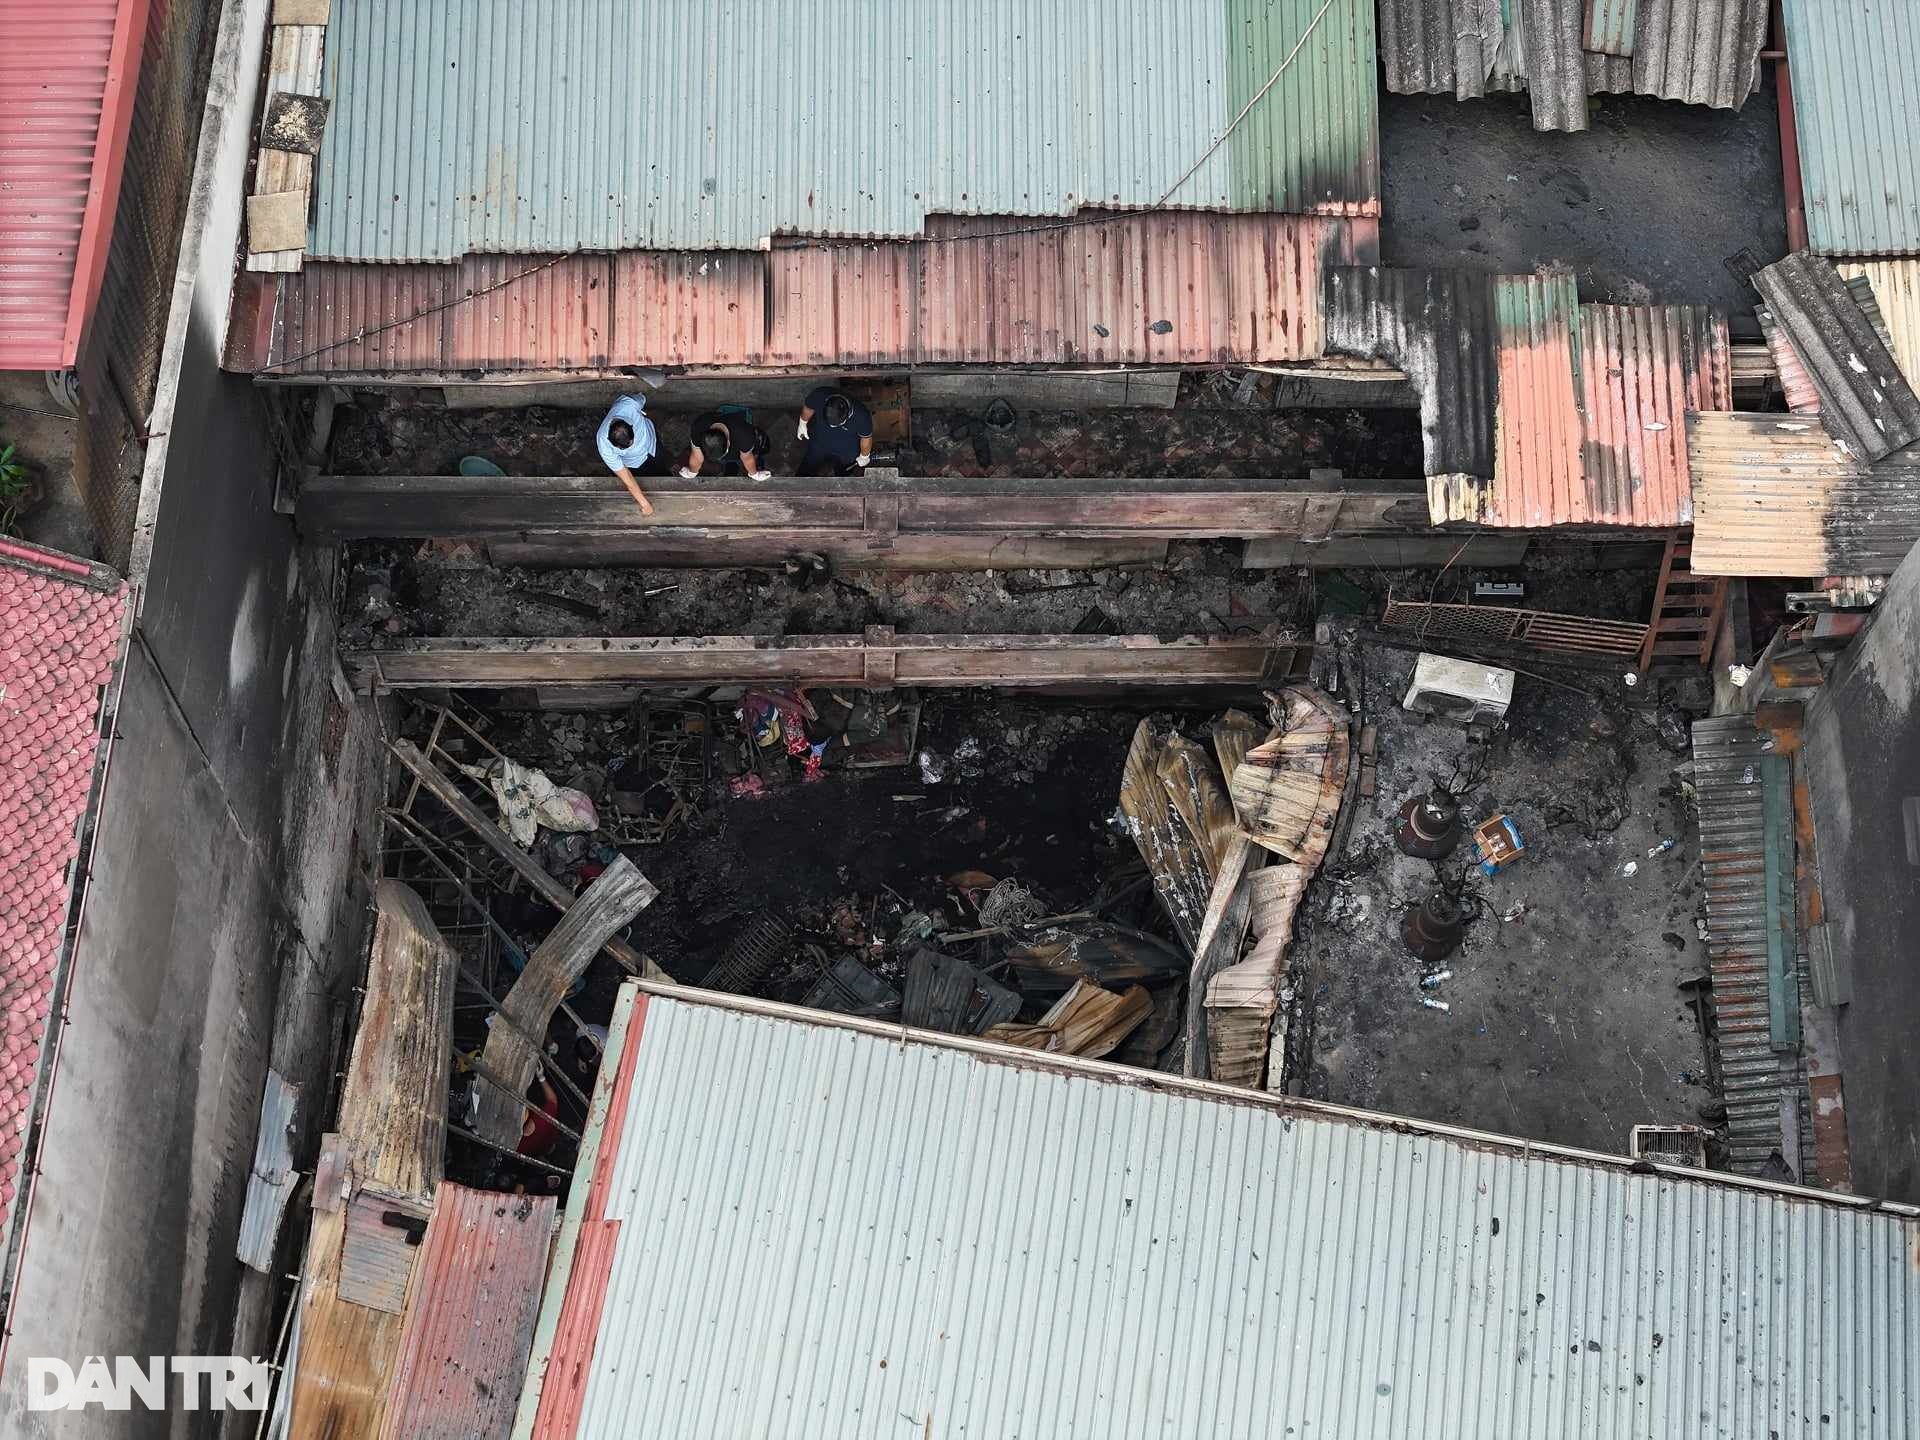 Bí thư Hà Nội: Xử nghiêm sai phạm nếu có trong vụ cháy 14 người tử vong - 2